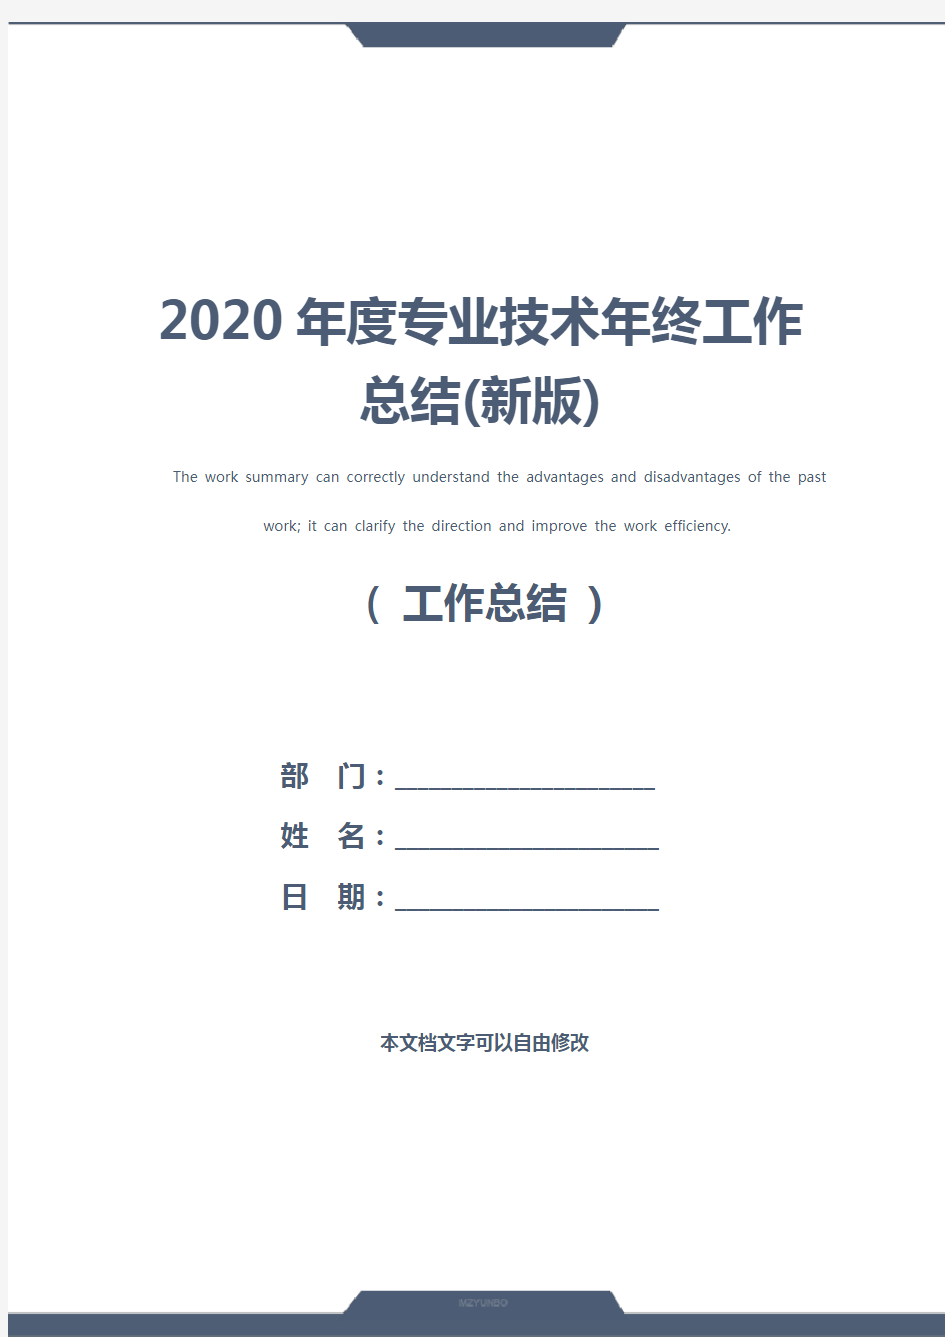 2020年度专业技术年终工作总结(新版)